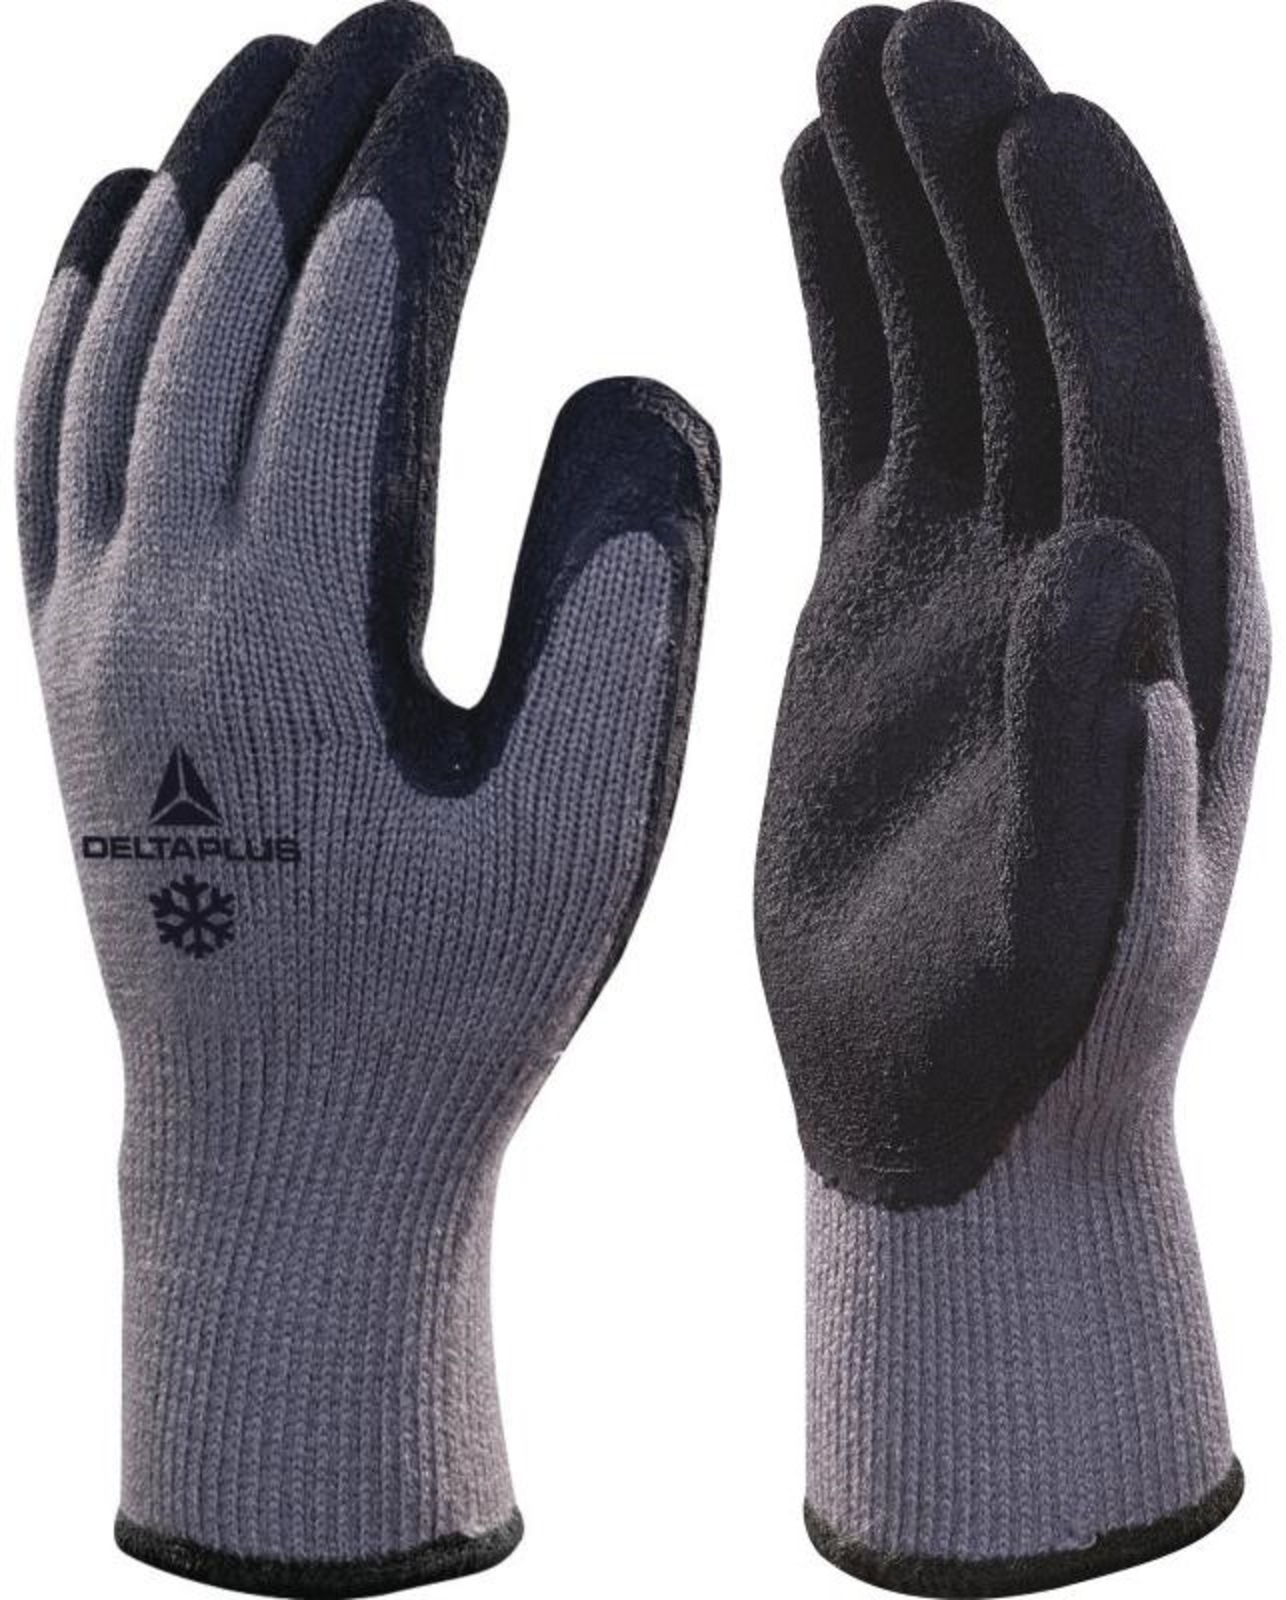 Zimné pracovné rukavice Delta Plus Apollon Winter VV735 - veľkosť: 9/L, farba: sivá/čierna